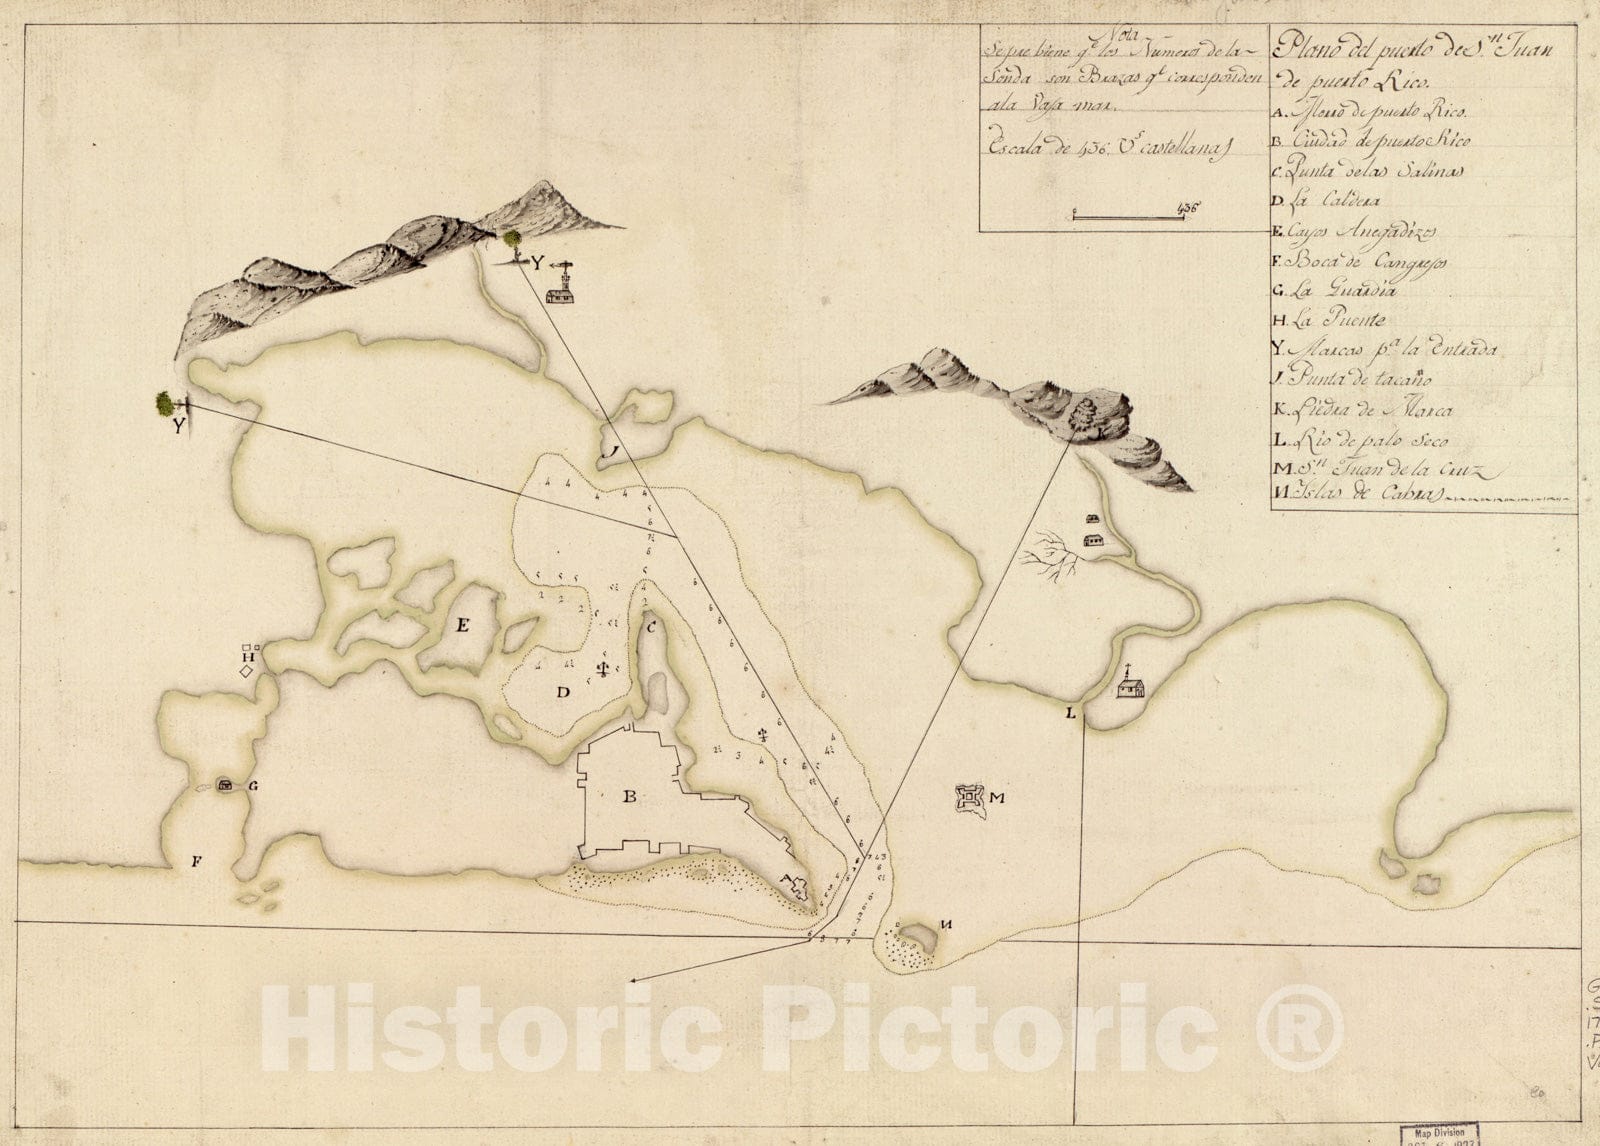 Historical Map, 1780 Plano del Puerto de Sn. Juan de Puerto Rico, Vintage Wall Art